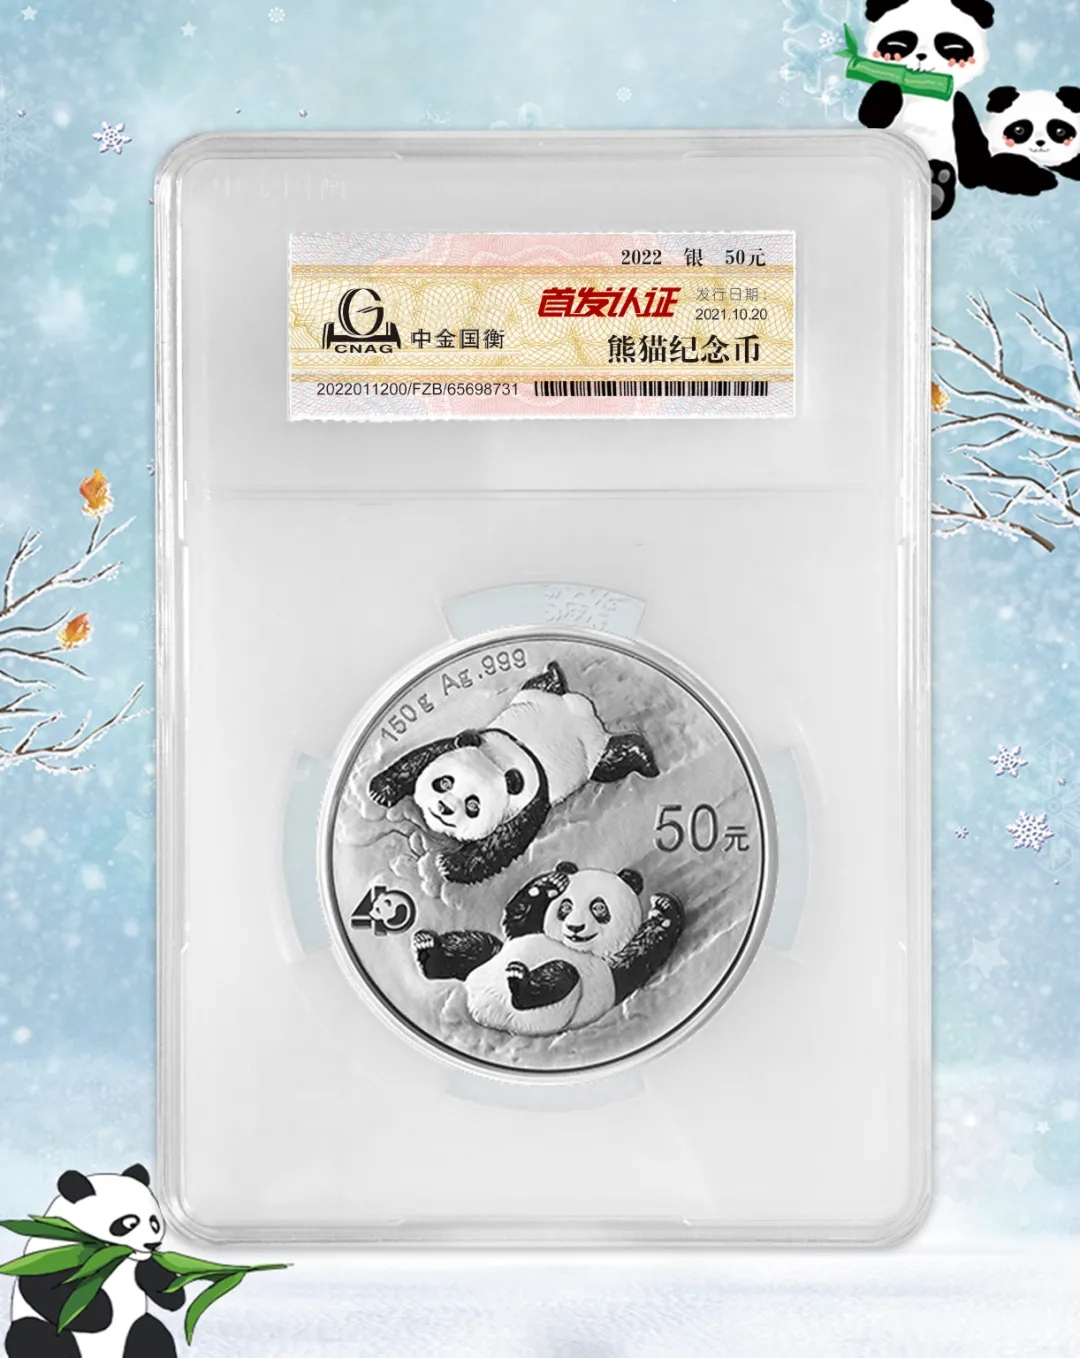 公告丨2022版熊猫贵金属纪念币“首发认证”开始预约